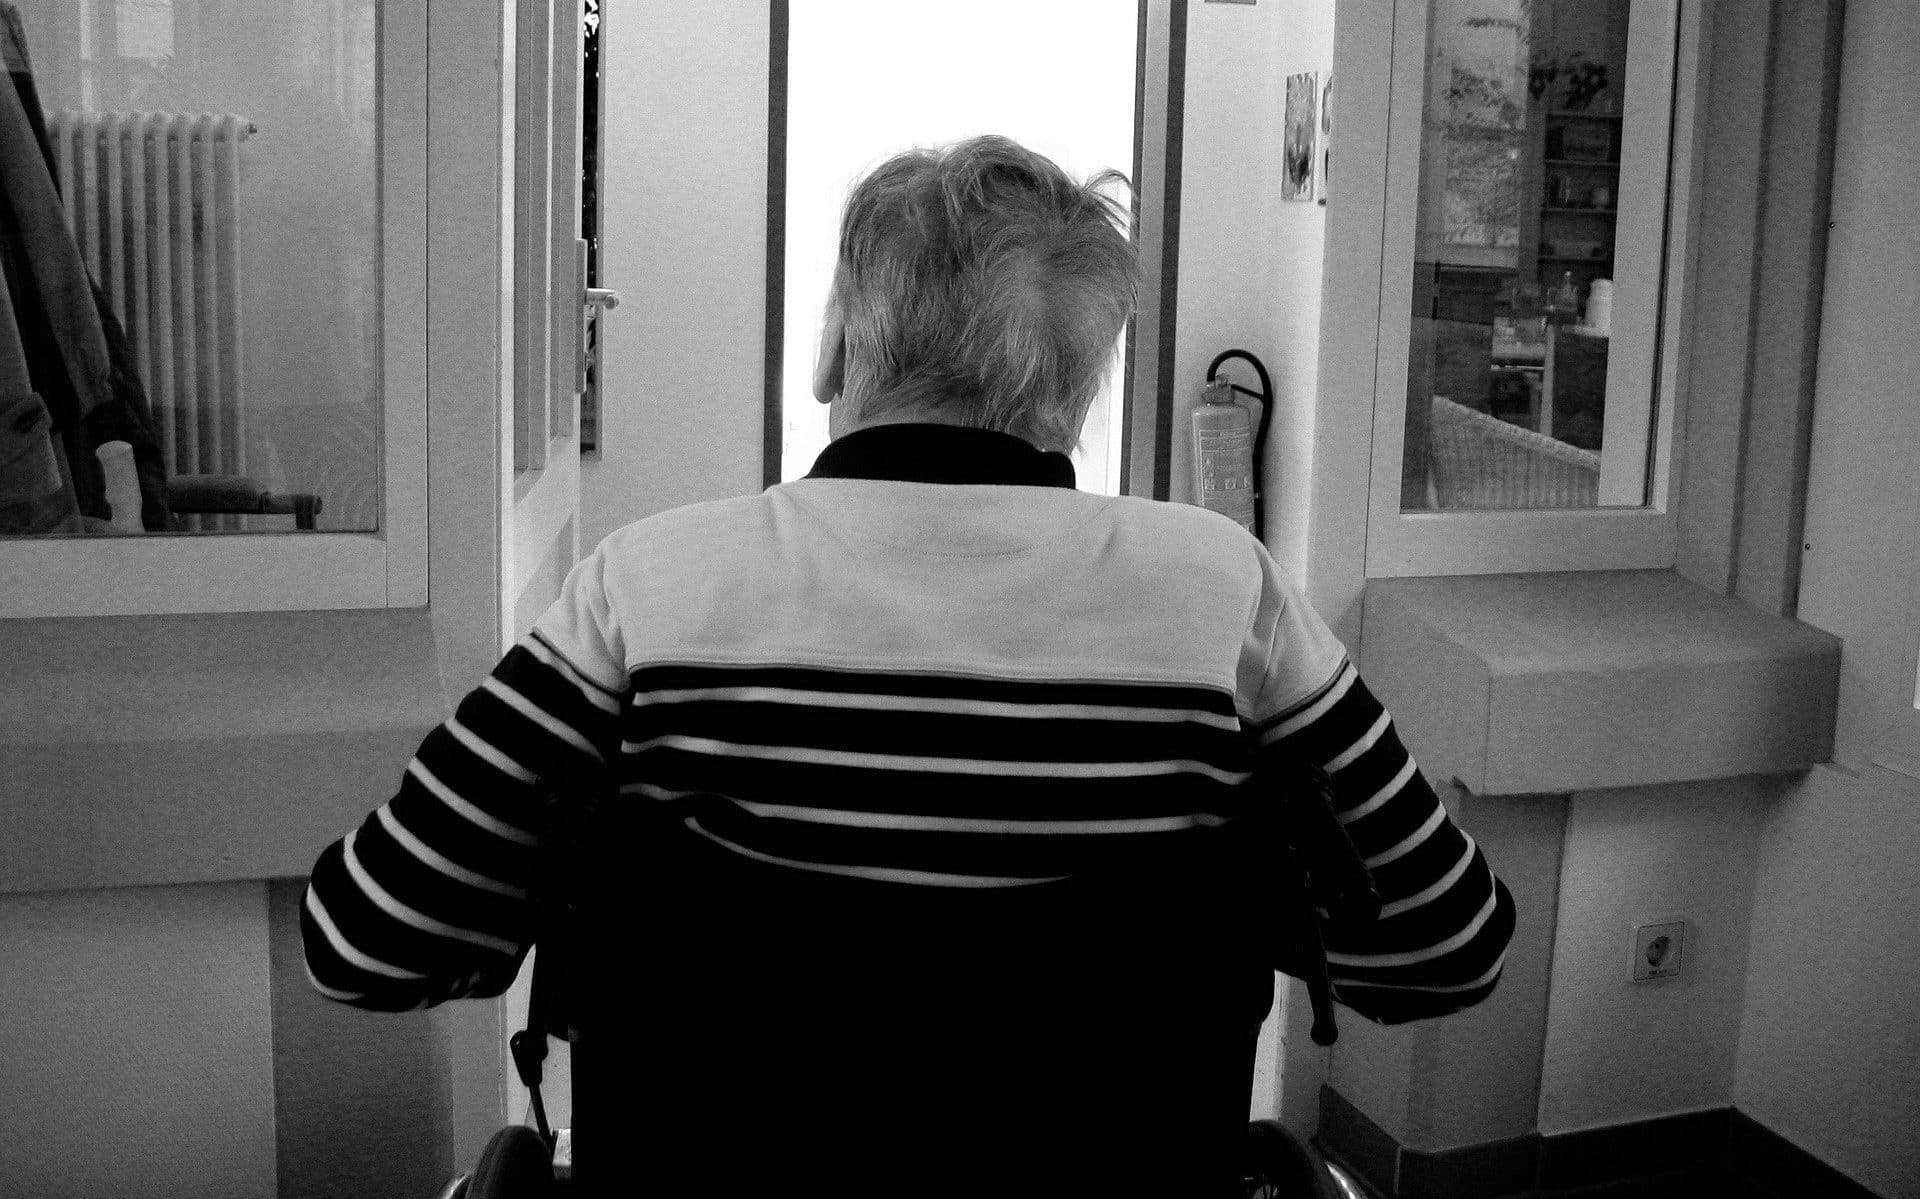 Uma foto em preto e branco: um idoso visto de costas sentado numa cadeira de rodas.